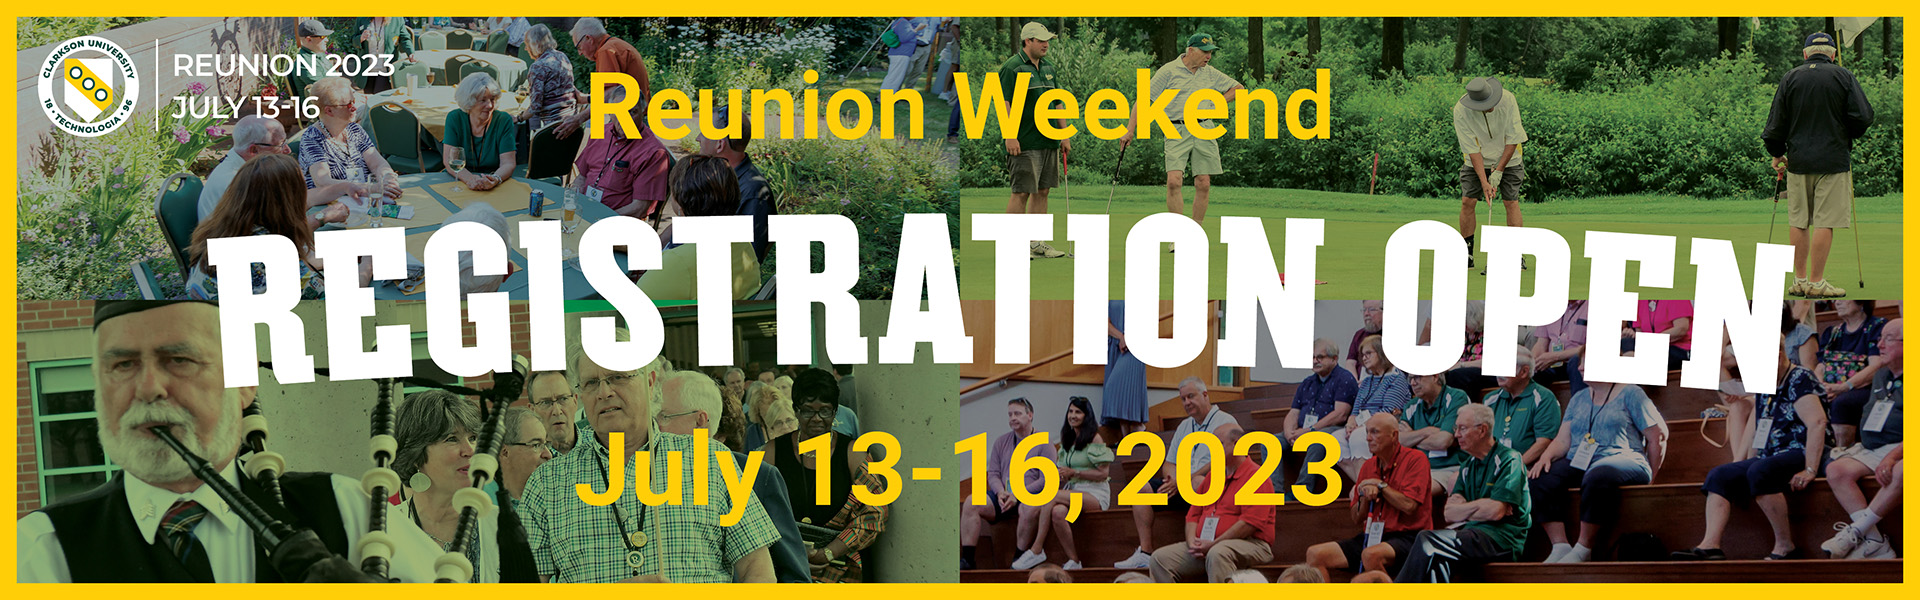 Reunion Weekend July 13-16, 2023 - Registration Open.